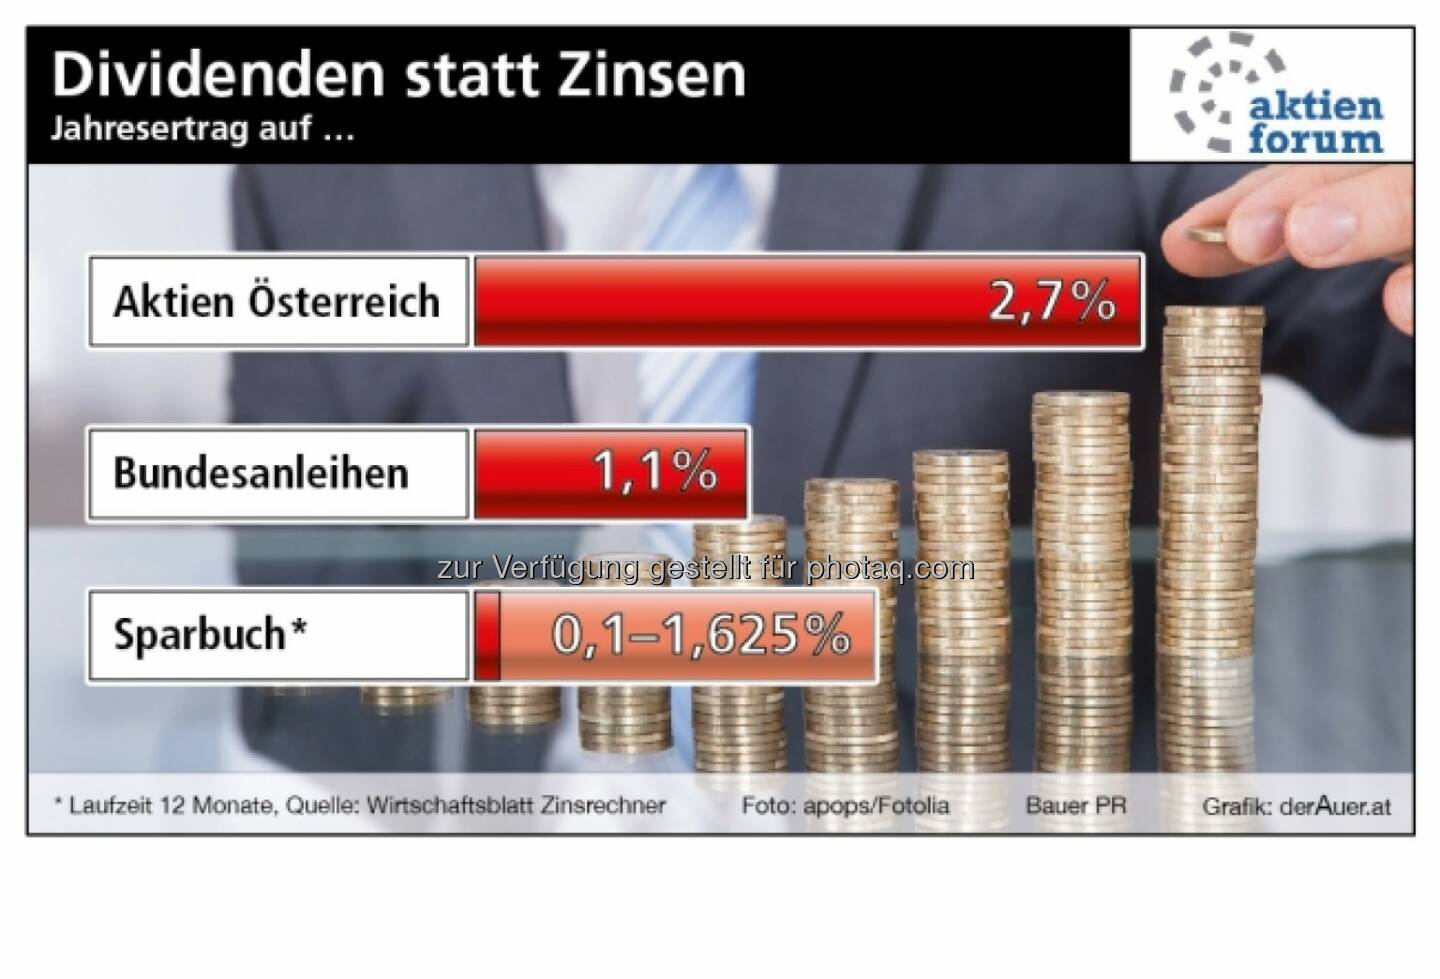 Dividenden statt Zinsen - Aktien Österreich vs. Bundesanleihen vs. Sparbuch (c) derAuer Grafik Buch Web